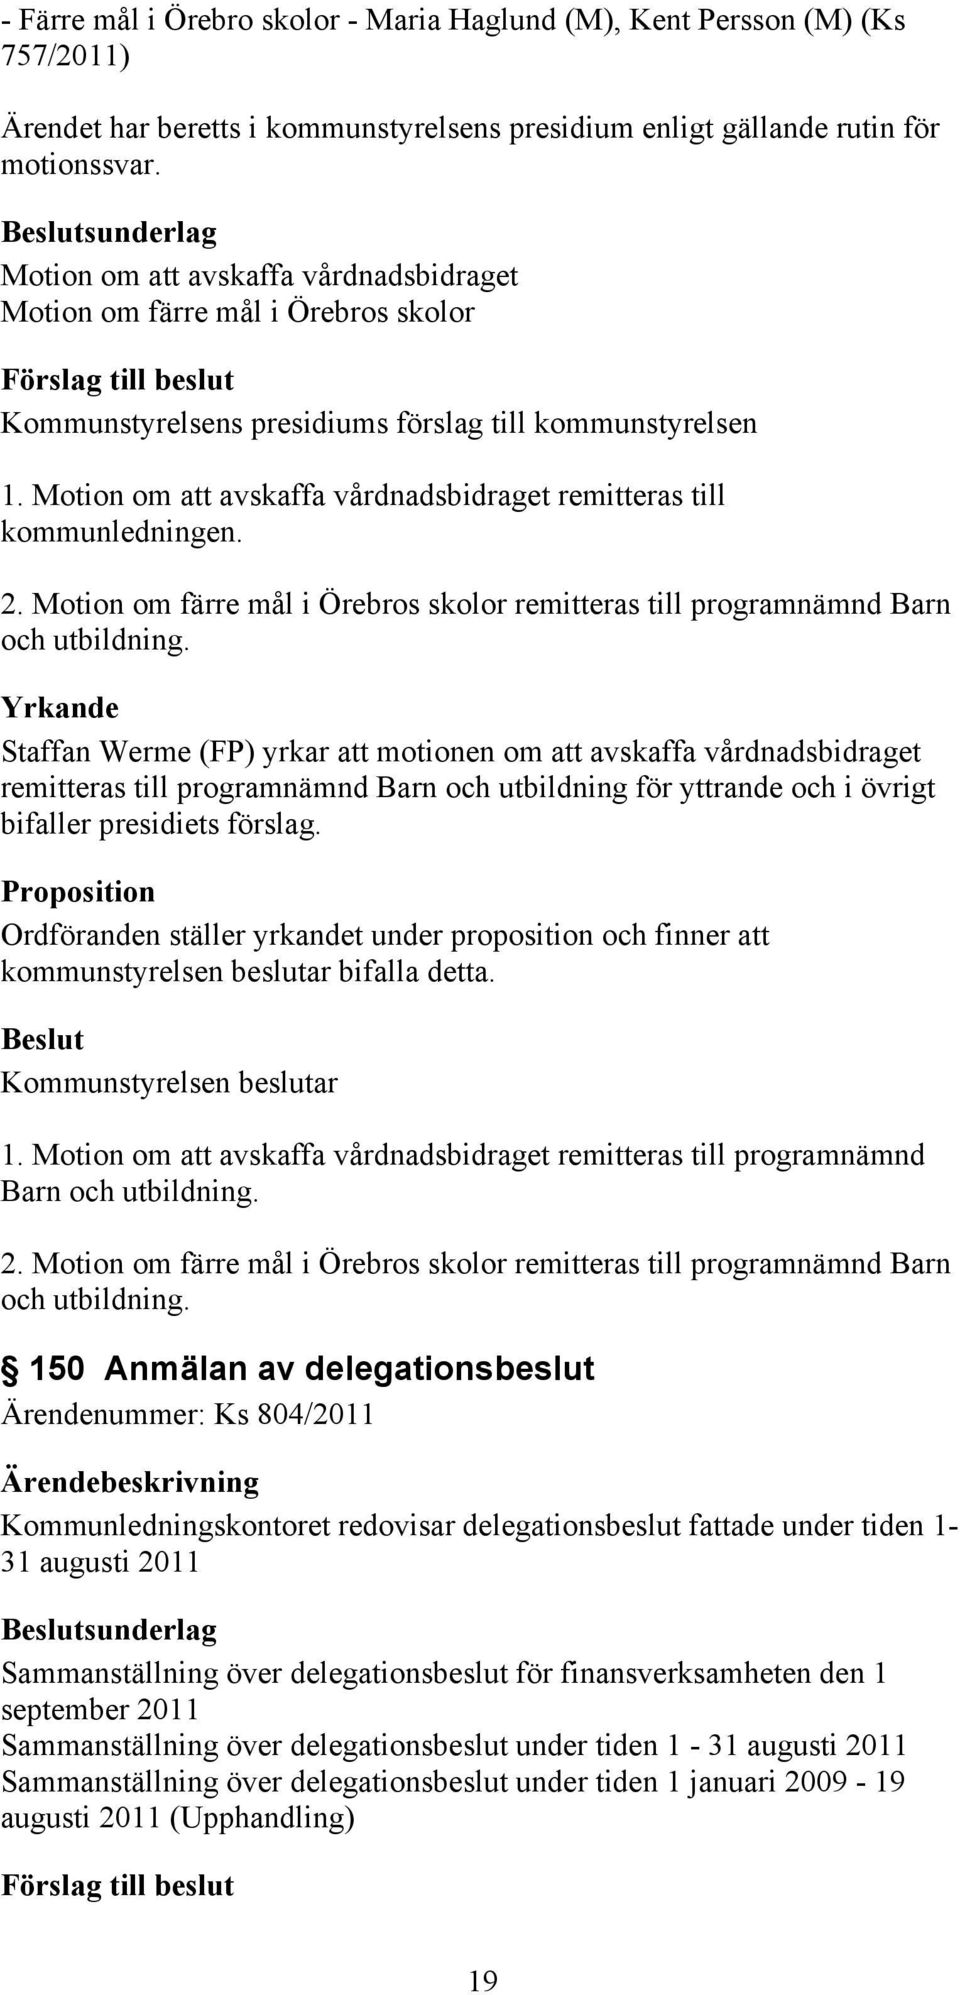 Motion om att avskaffa vårdnadsbidraget remitteras till kommunledningen. 2. Motion om färre mål i Örebros skolor remitteras till programnämnd Barn och utbildning.